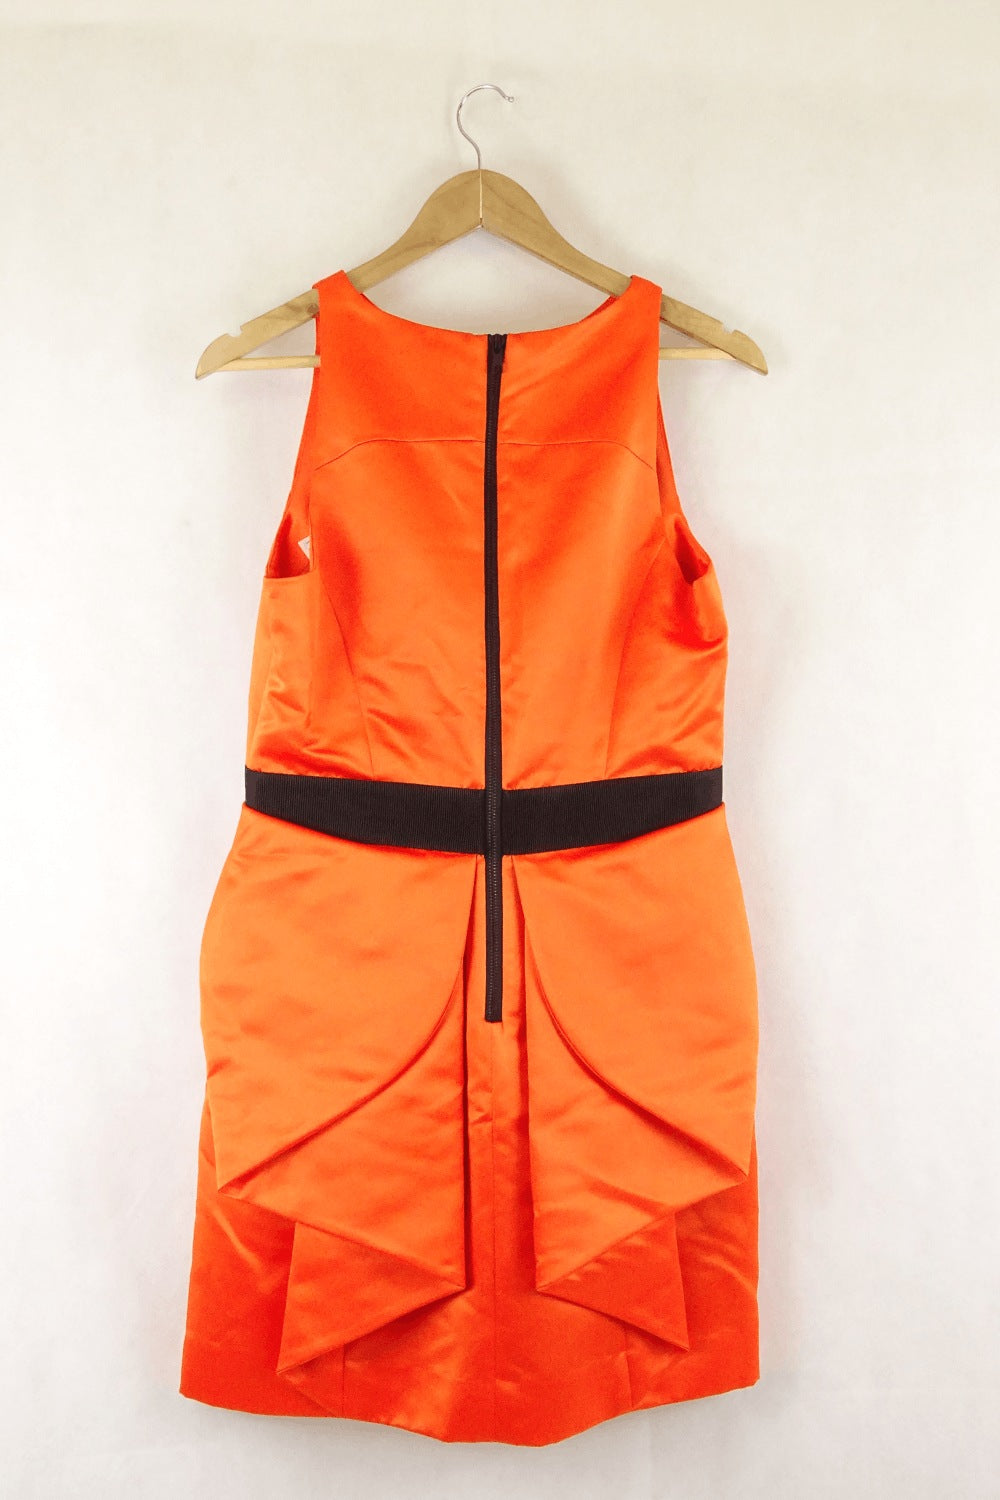 Milly Orange Dress 12